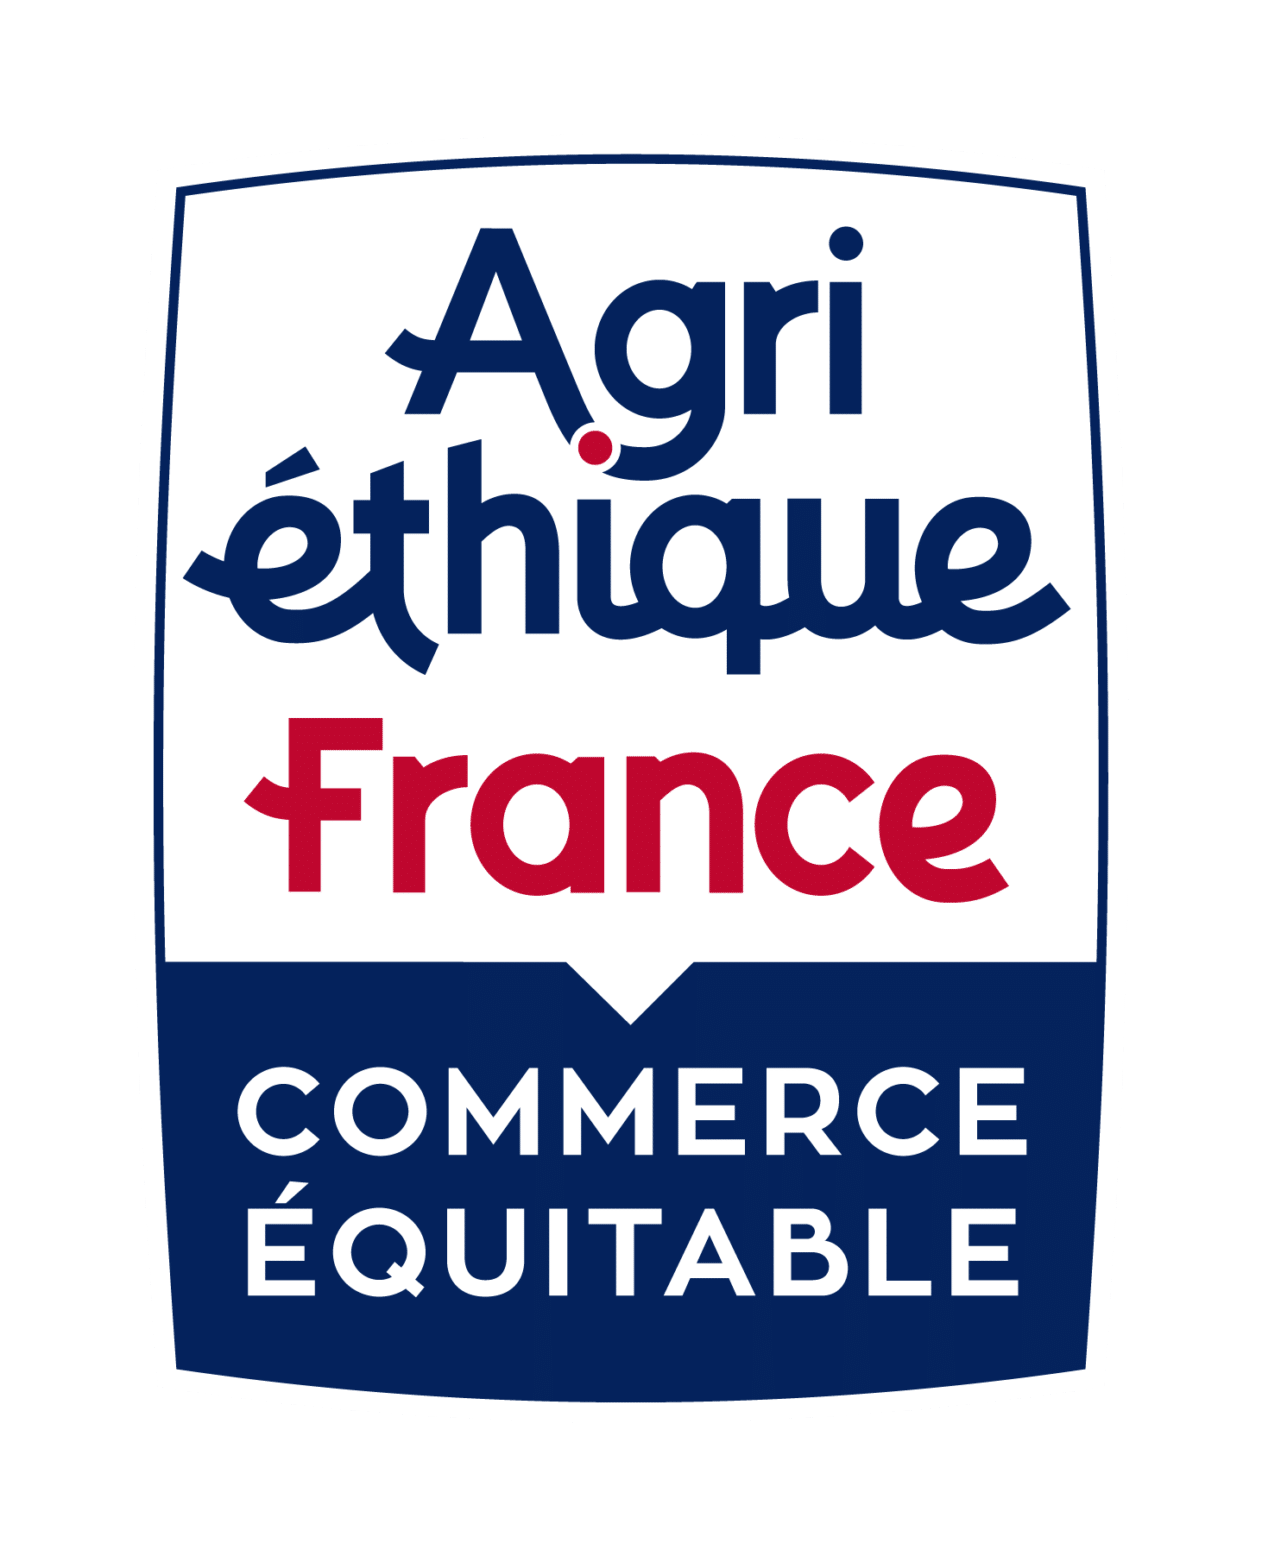 Agri éthique France